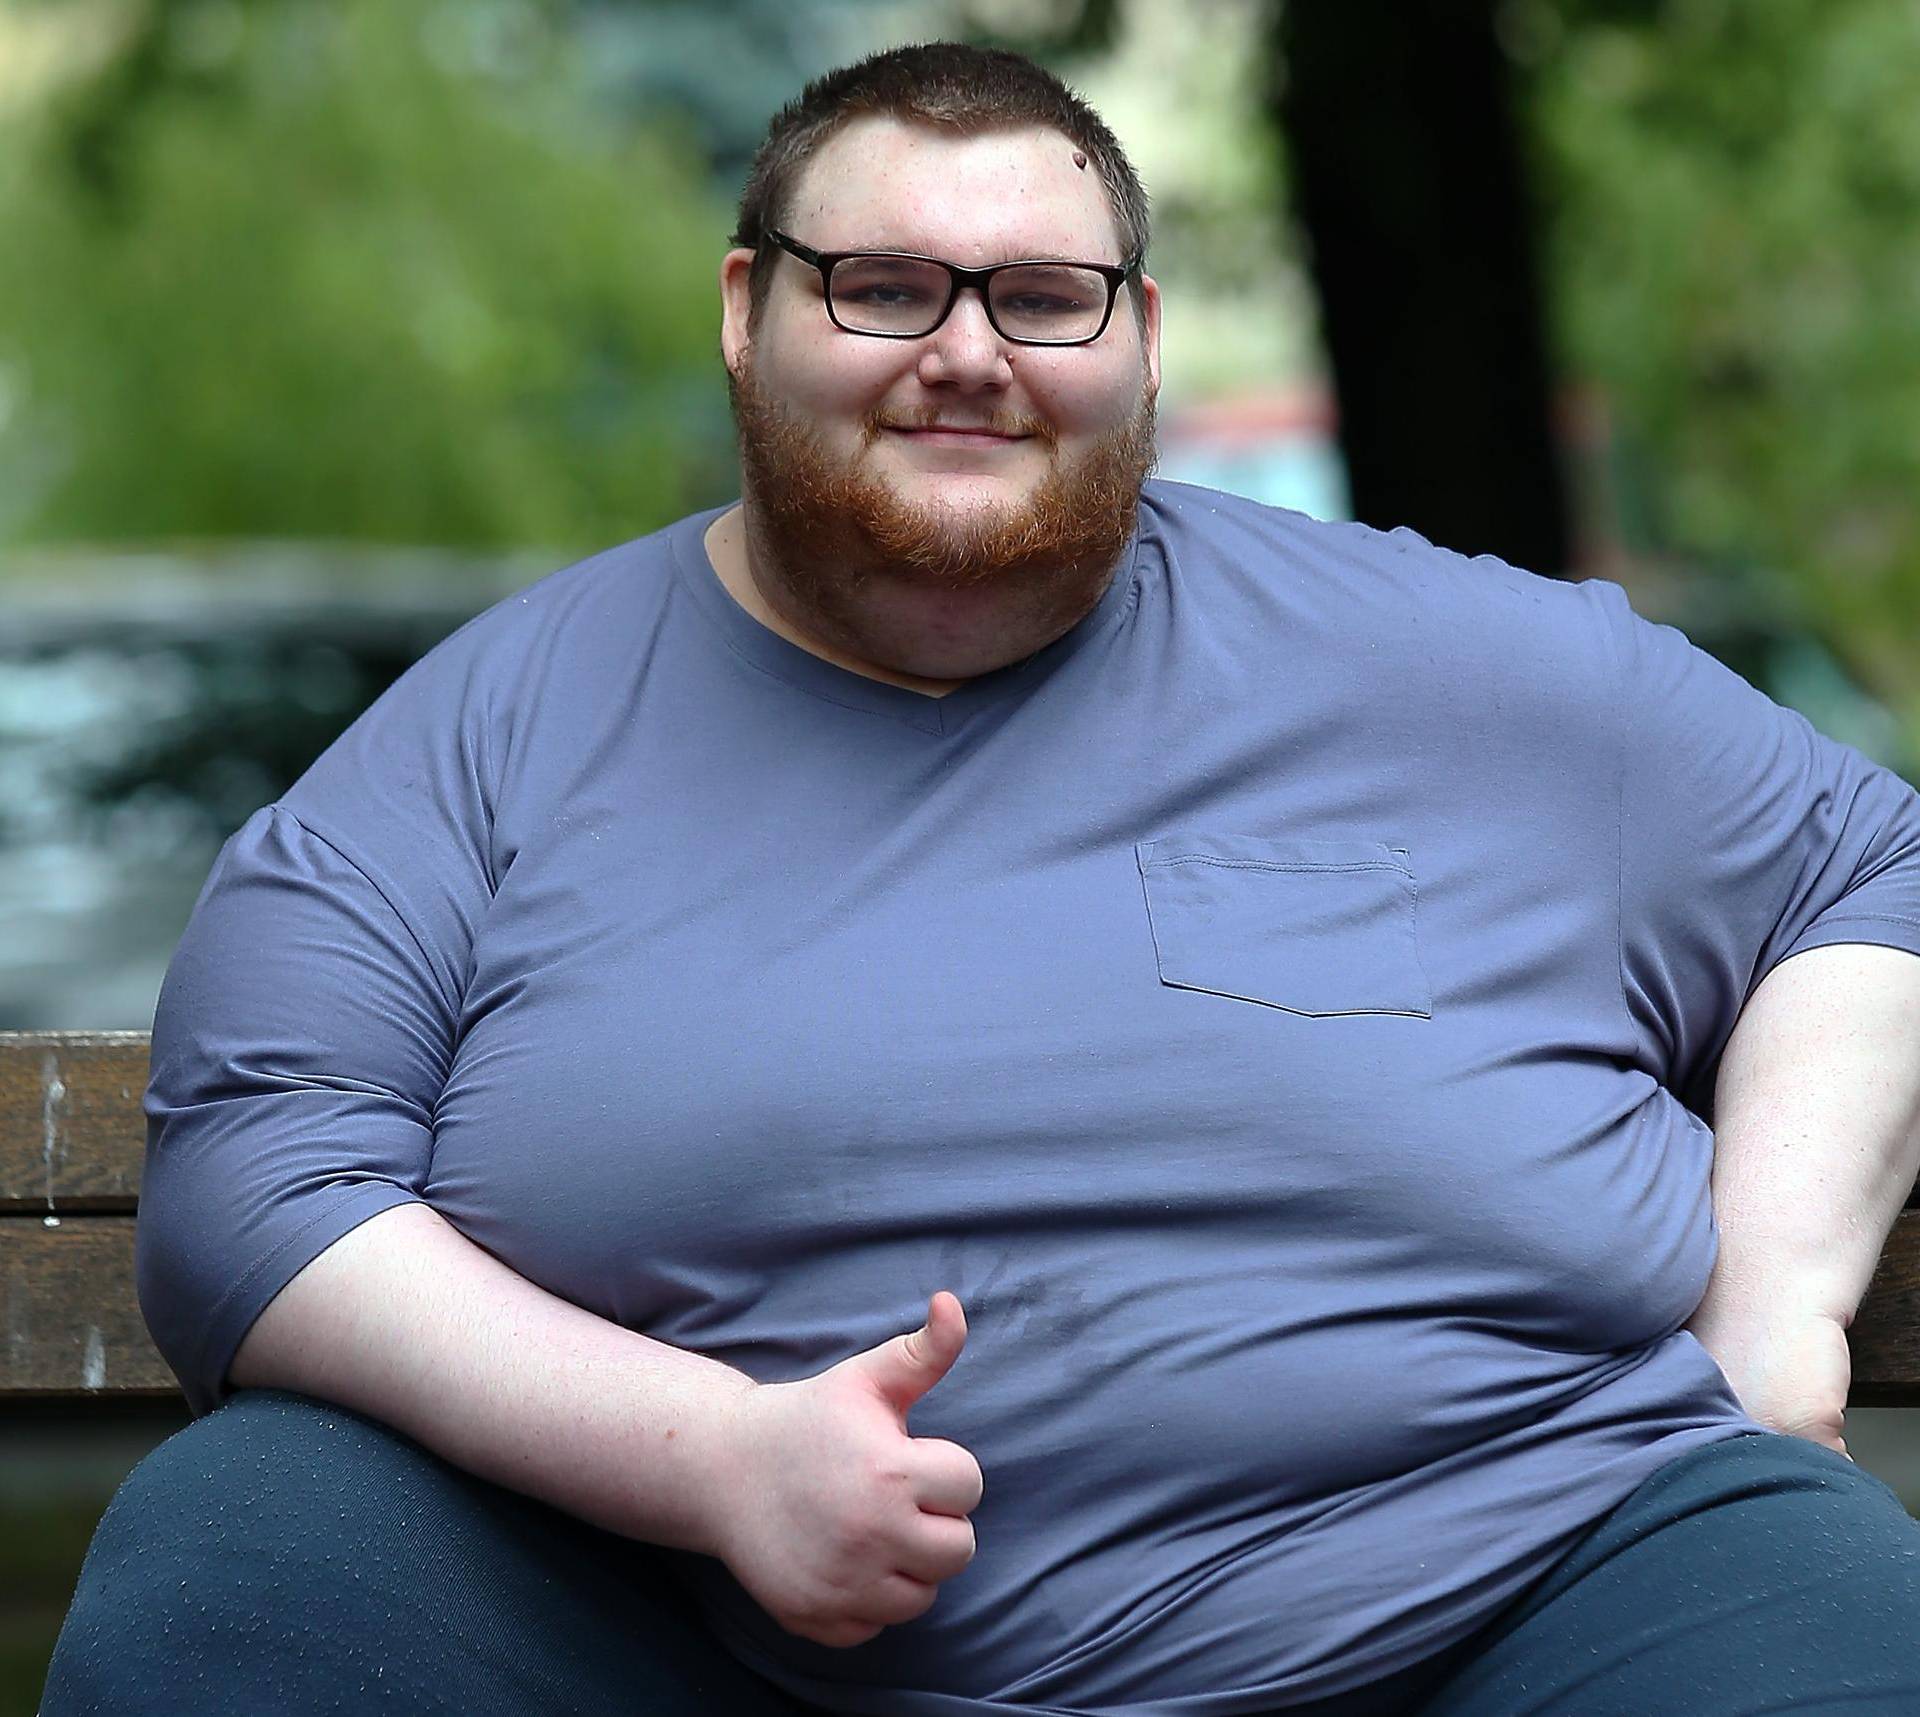 Imao 290 kg: 'Nakon 4 godine napokon sam izašao iz stana'